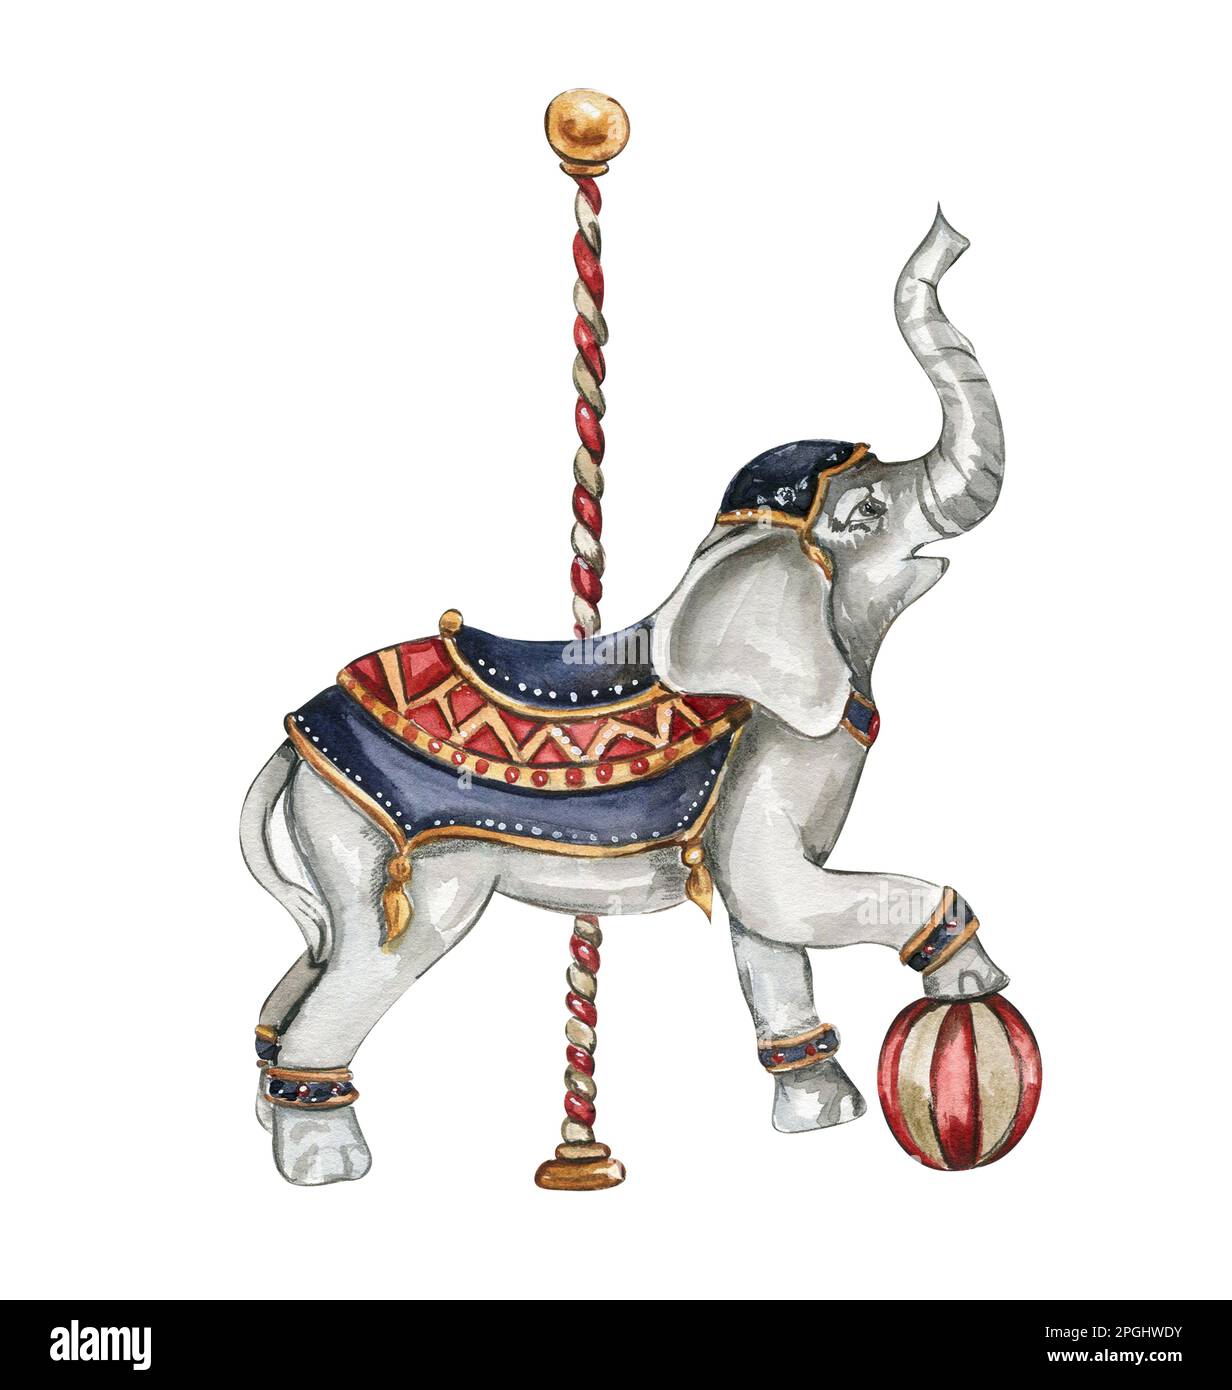 Acuarela dibujado a mano elefante de circo estilo vintage. Un dibujo de un elefante con una bola roja. Perfecto para bodas, invitaciones, blogs, tarjetas Foto de stock